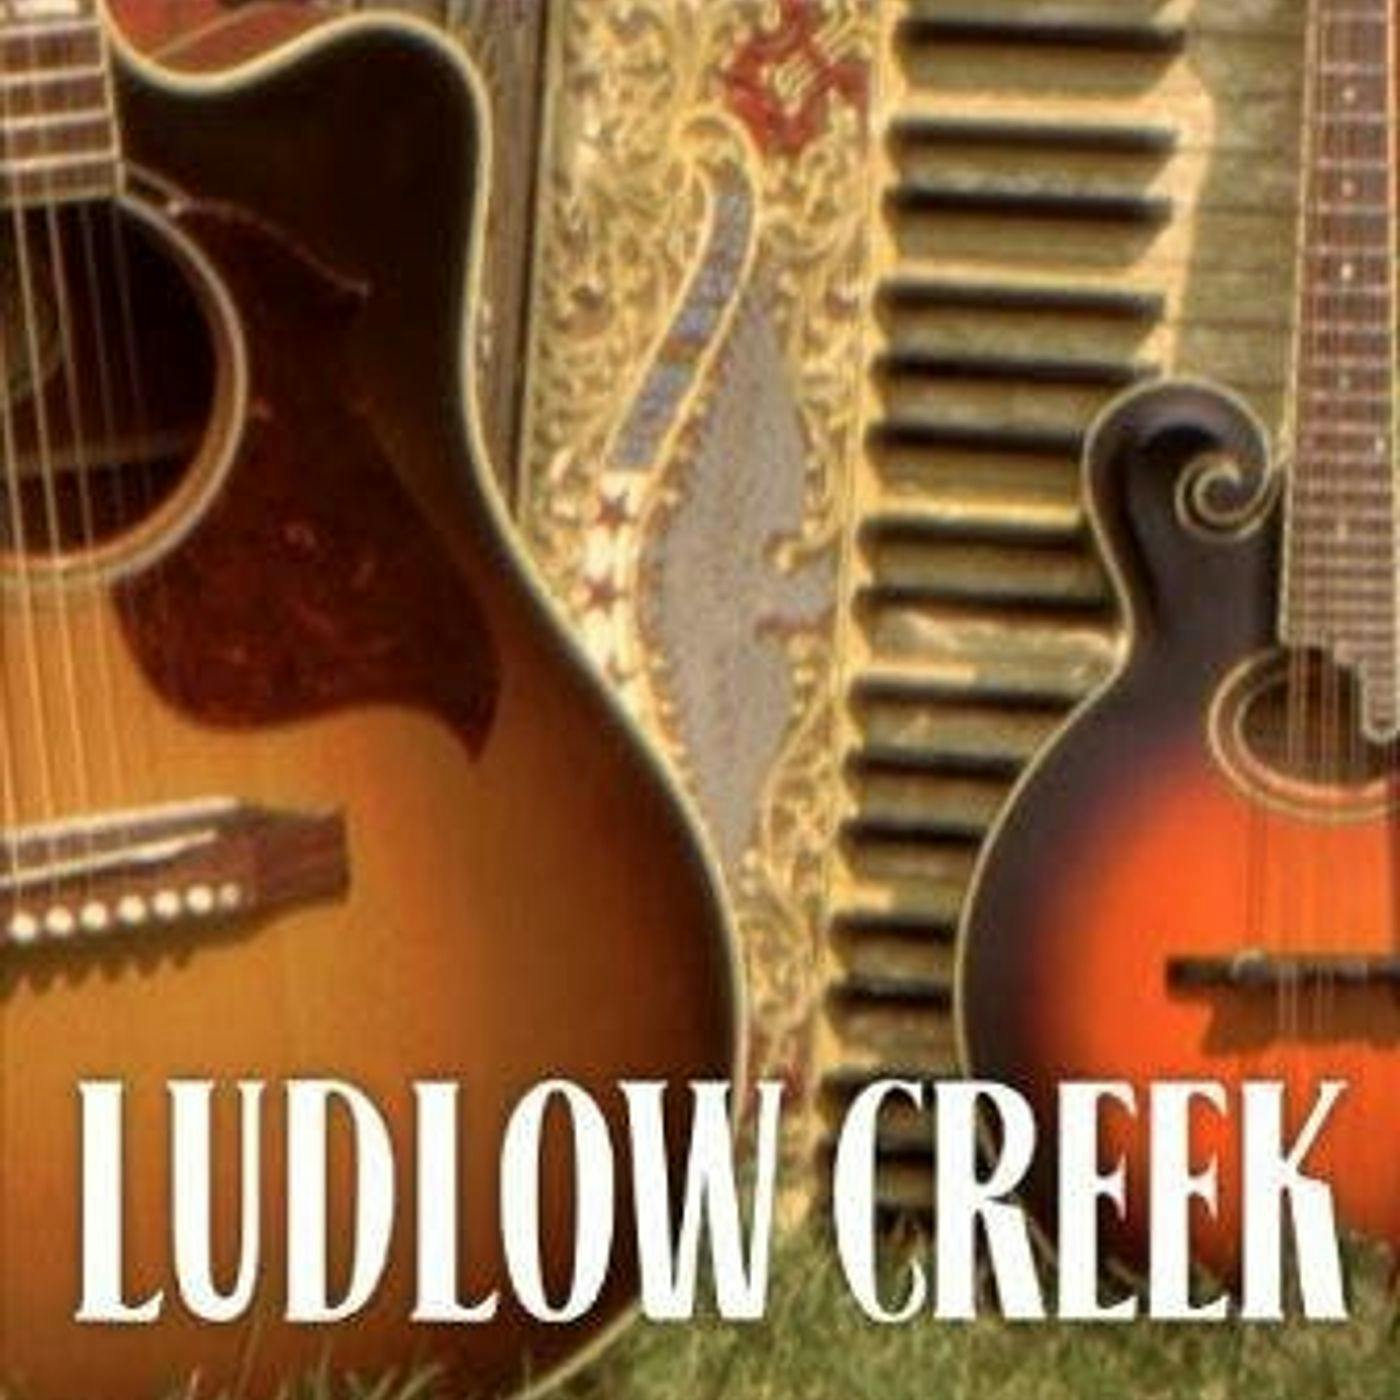 Ludlow Creek Interview